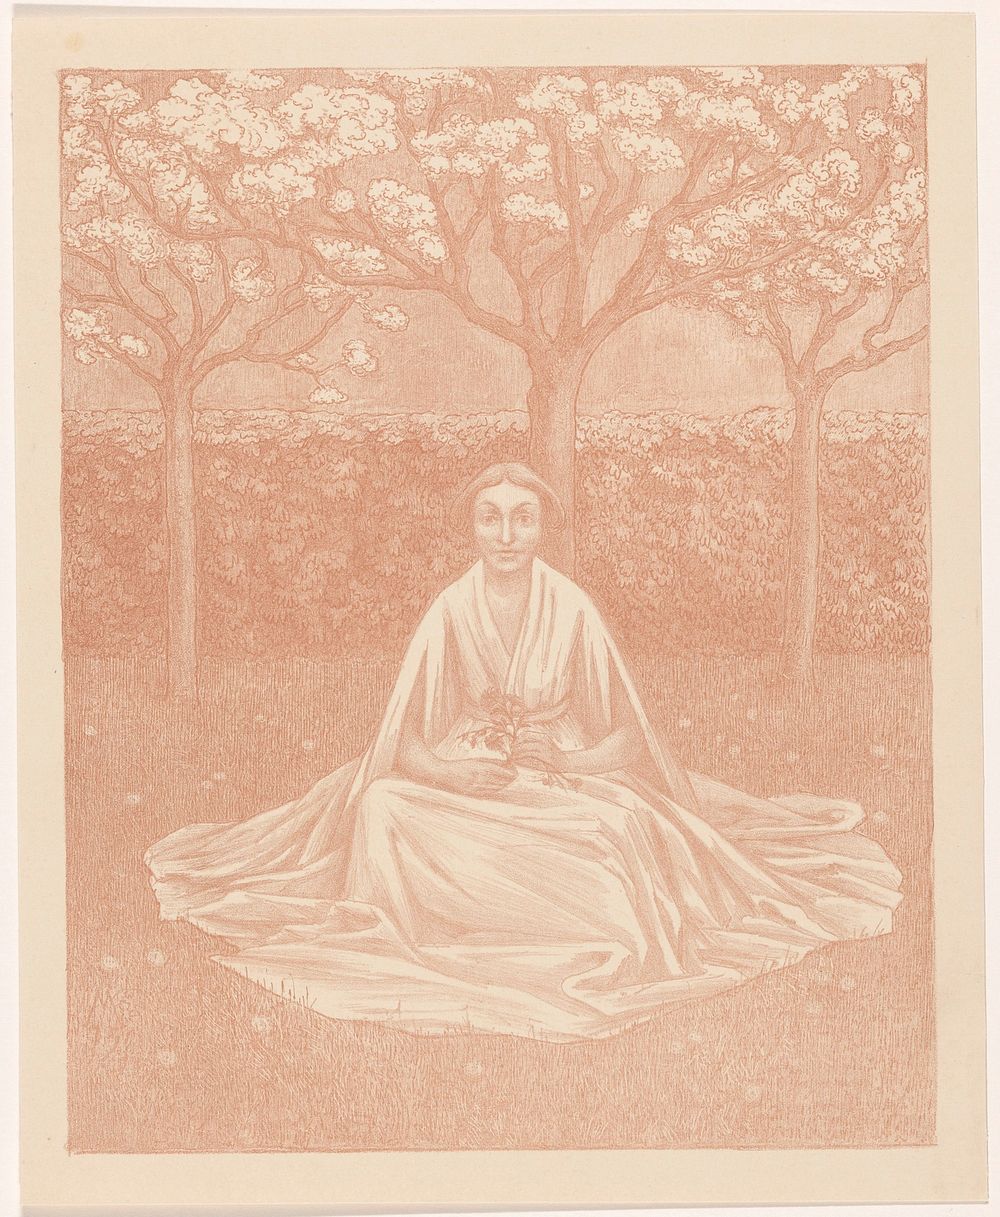 Vrouw met jurk zittend in grasveld (1915) by Simon Moulijn